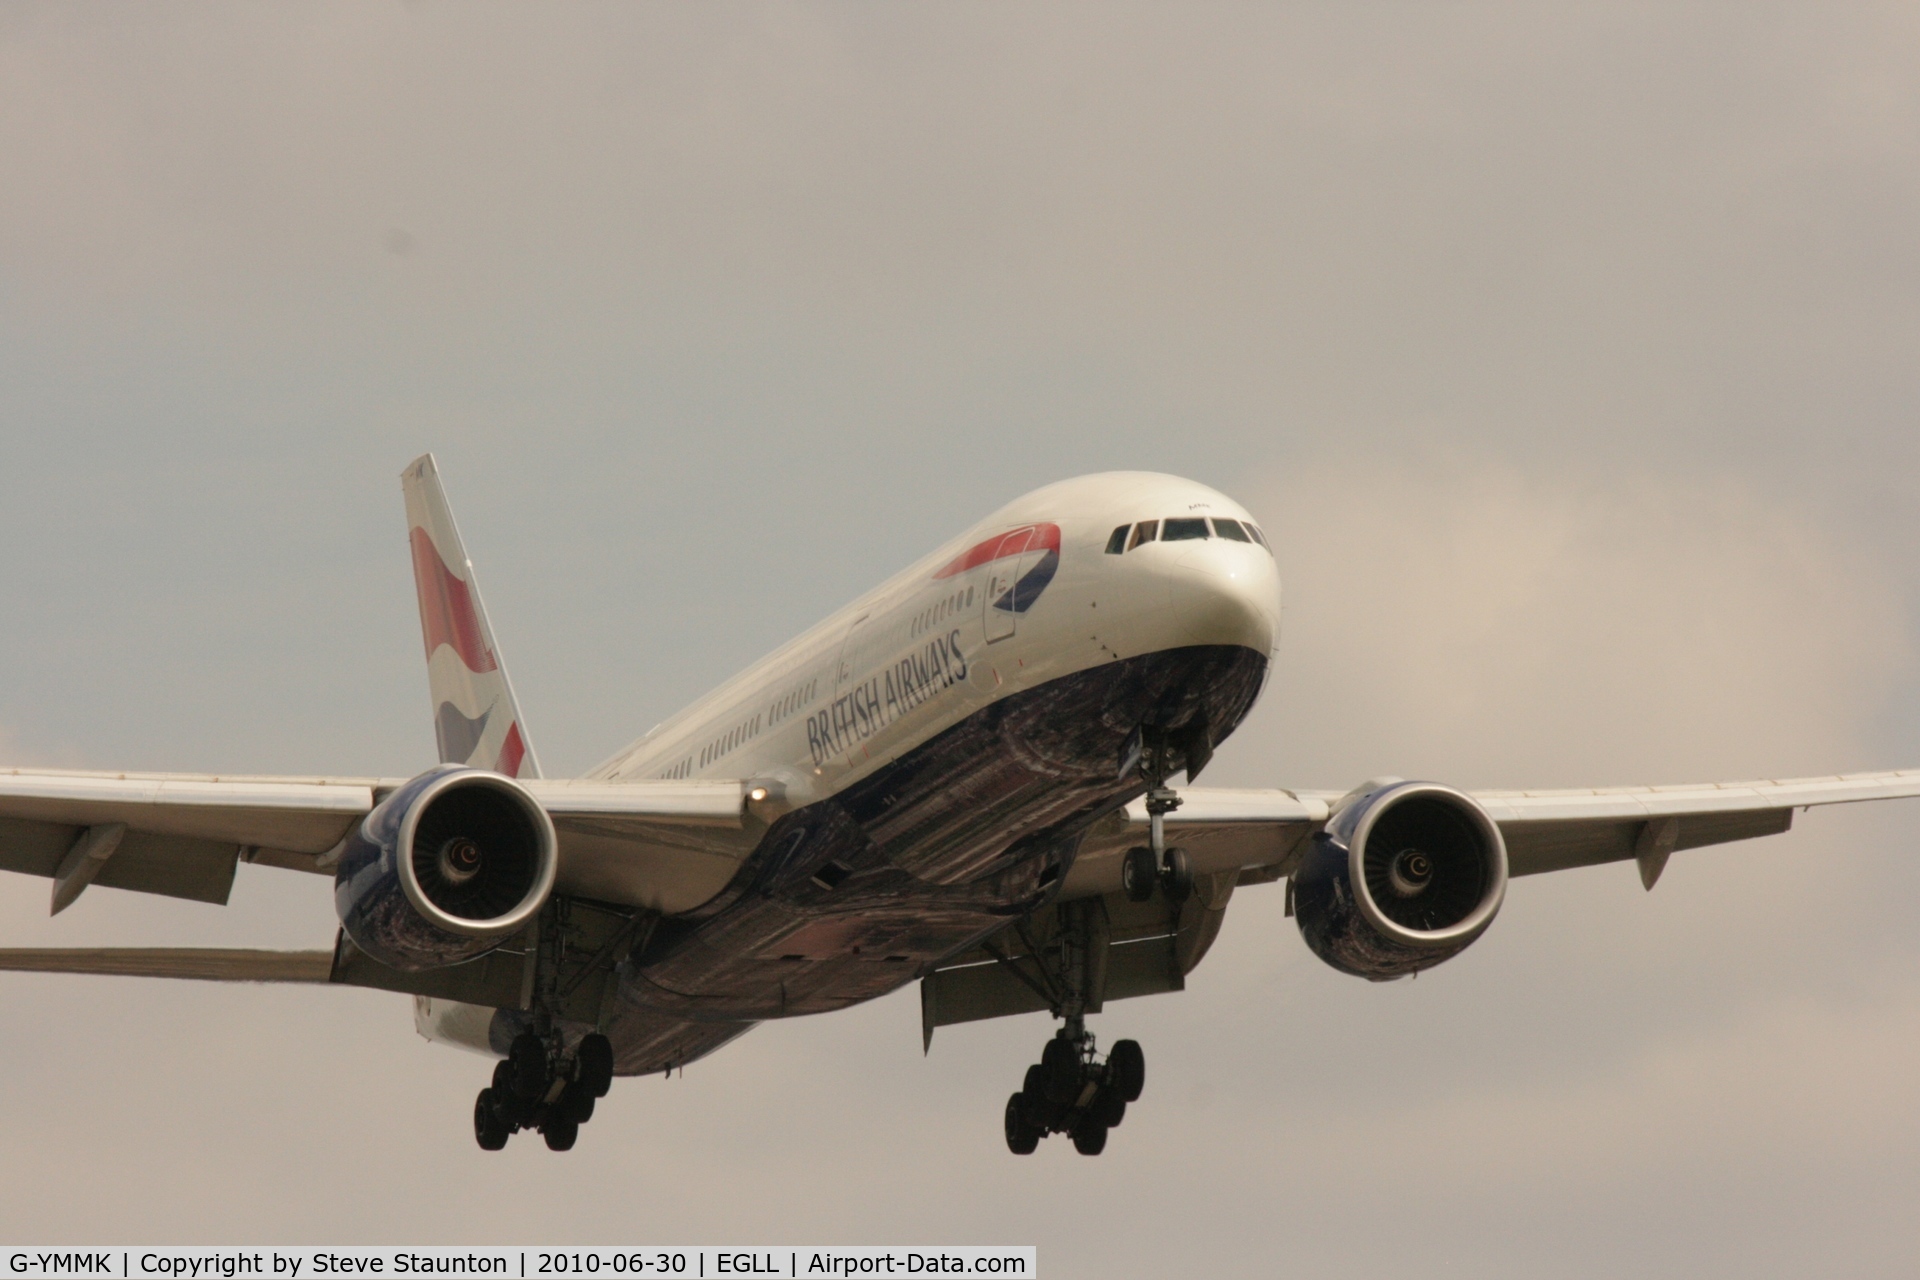 G-YMMK, 2000 Boeing 777-236 C/N 30312, Taken at Heathrow Airport, June 2010